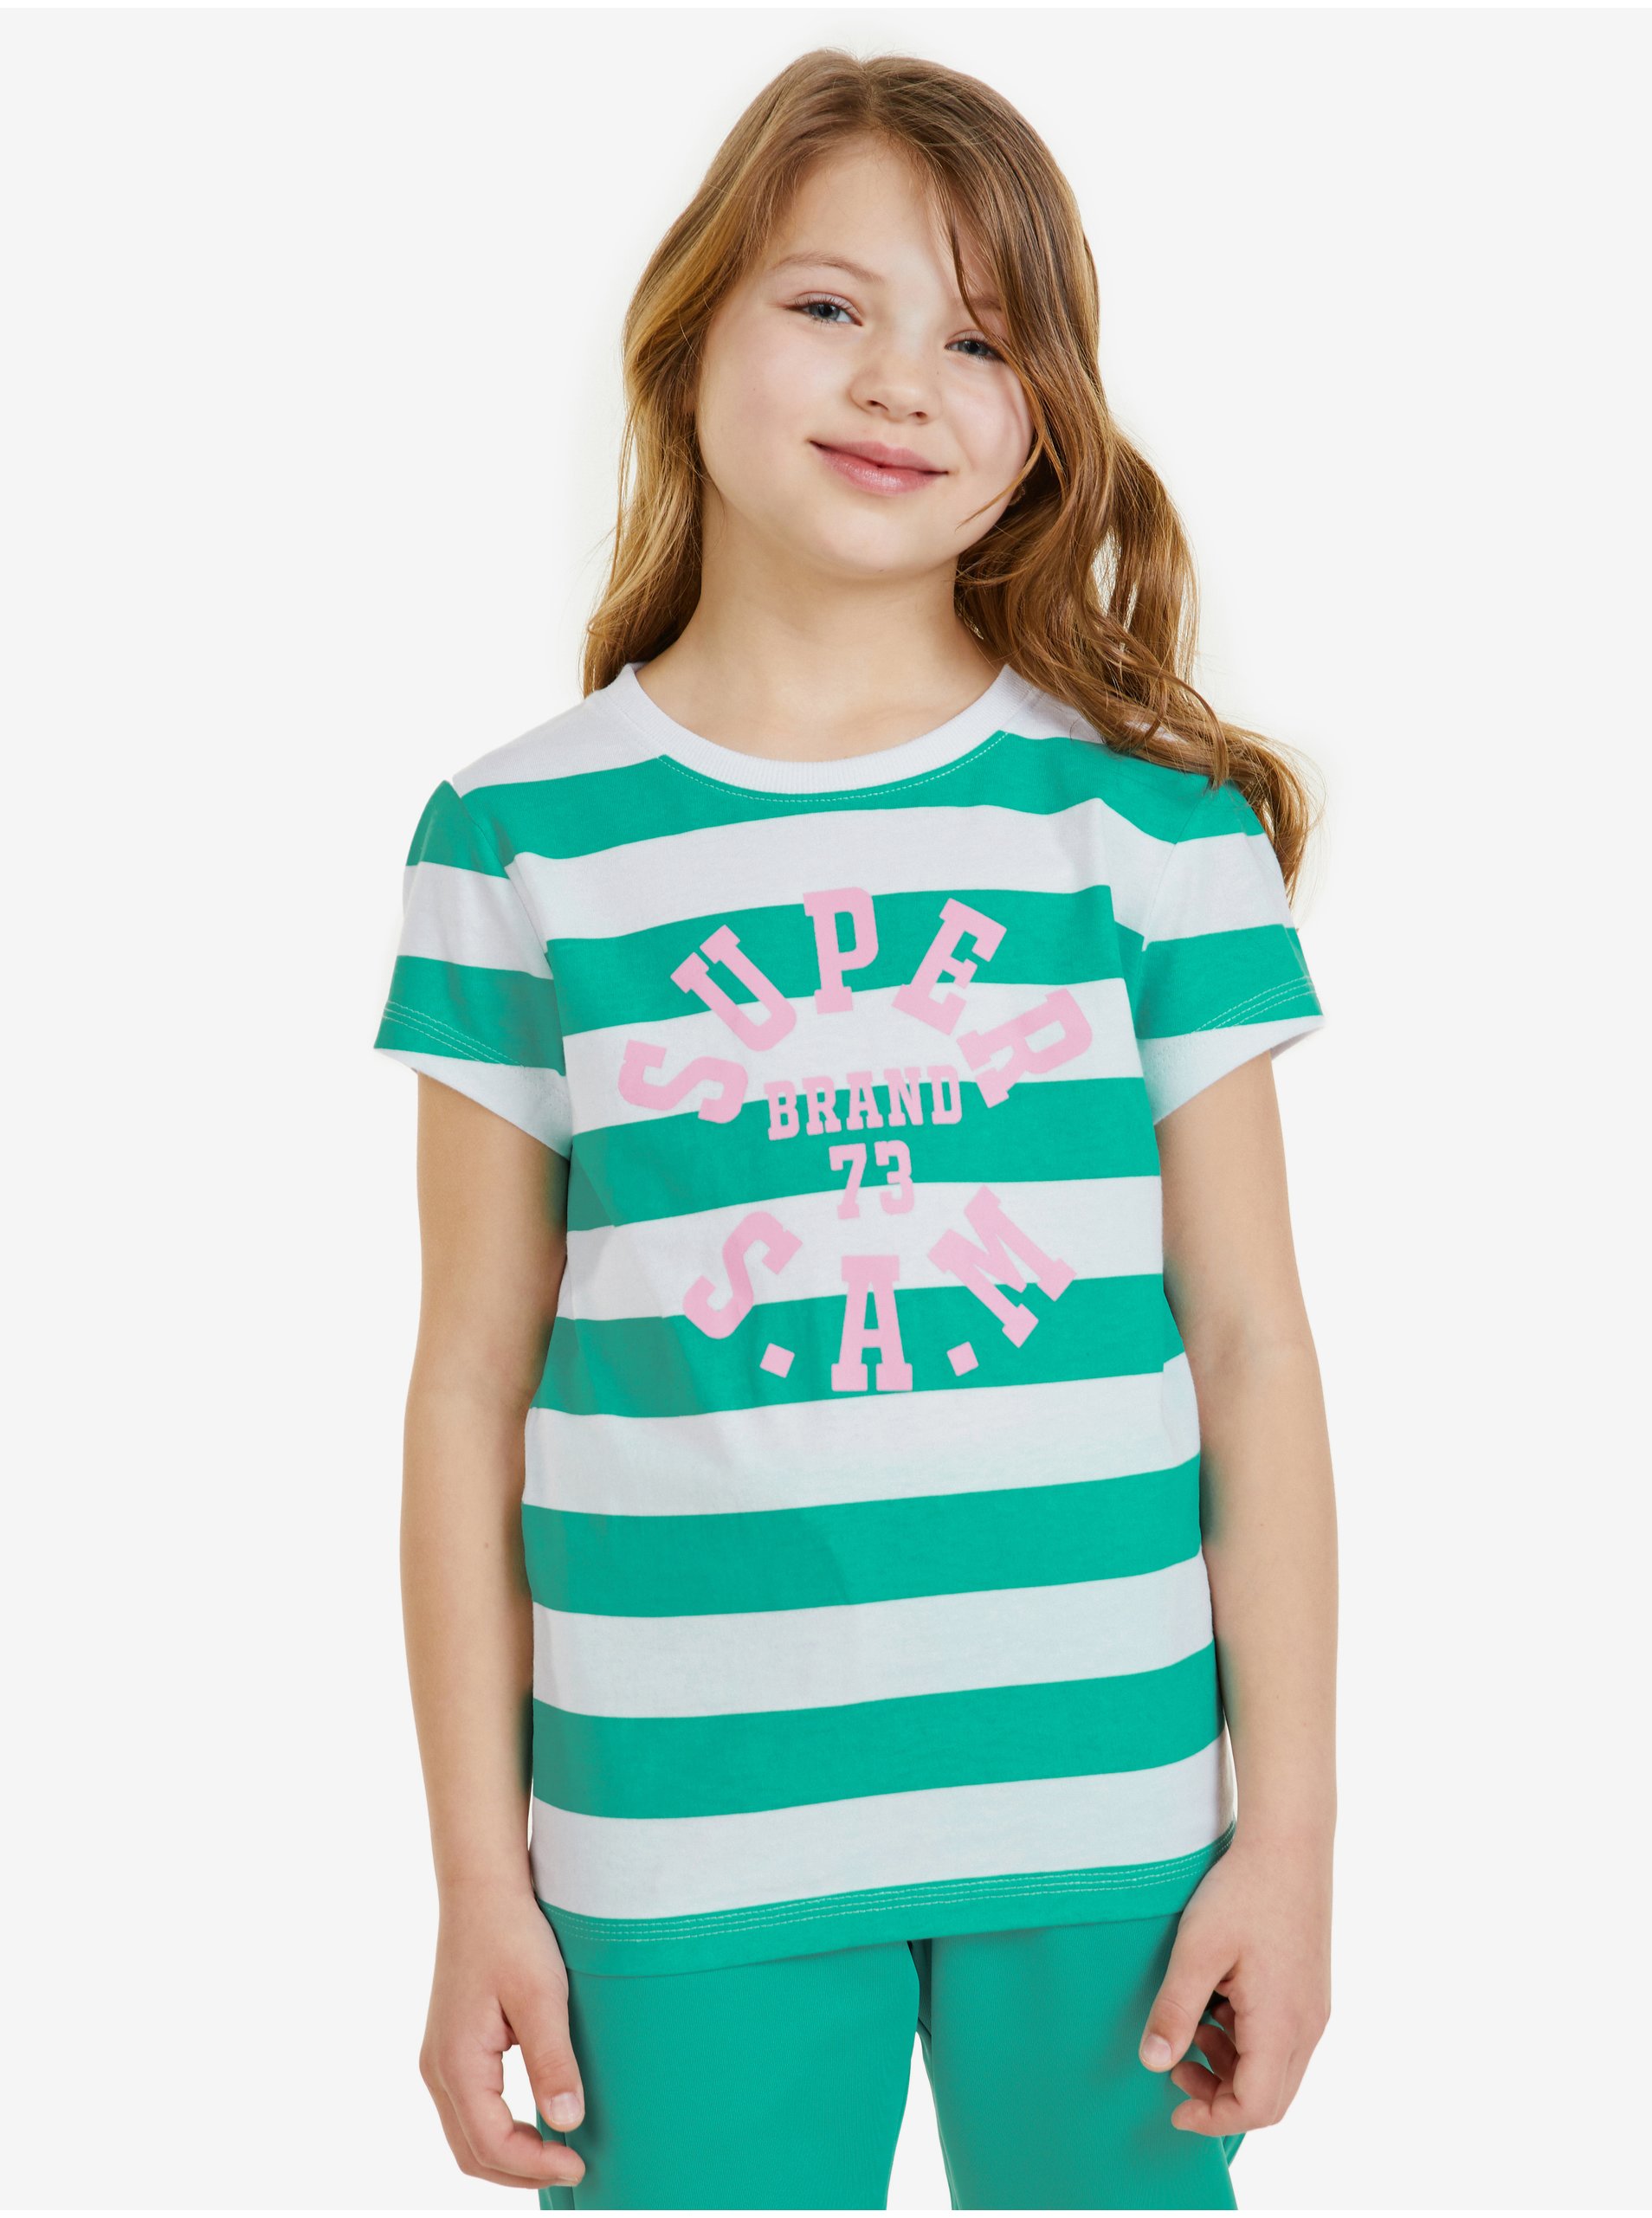 Lacno Bielo-zelené detské pruhované tričko SAM 73 Siobhan